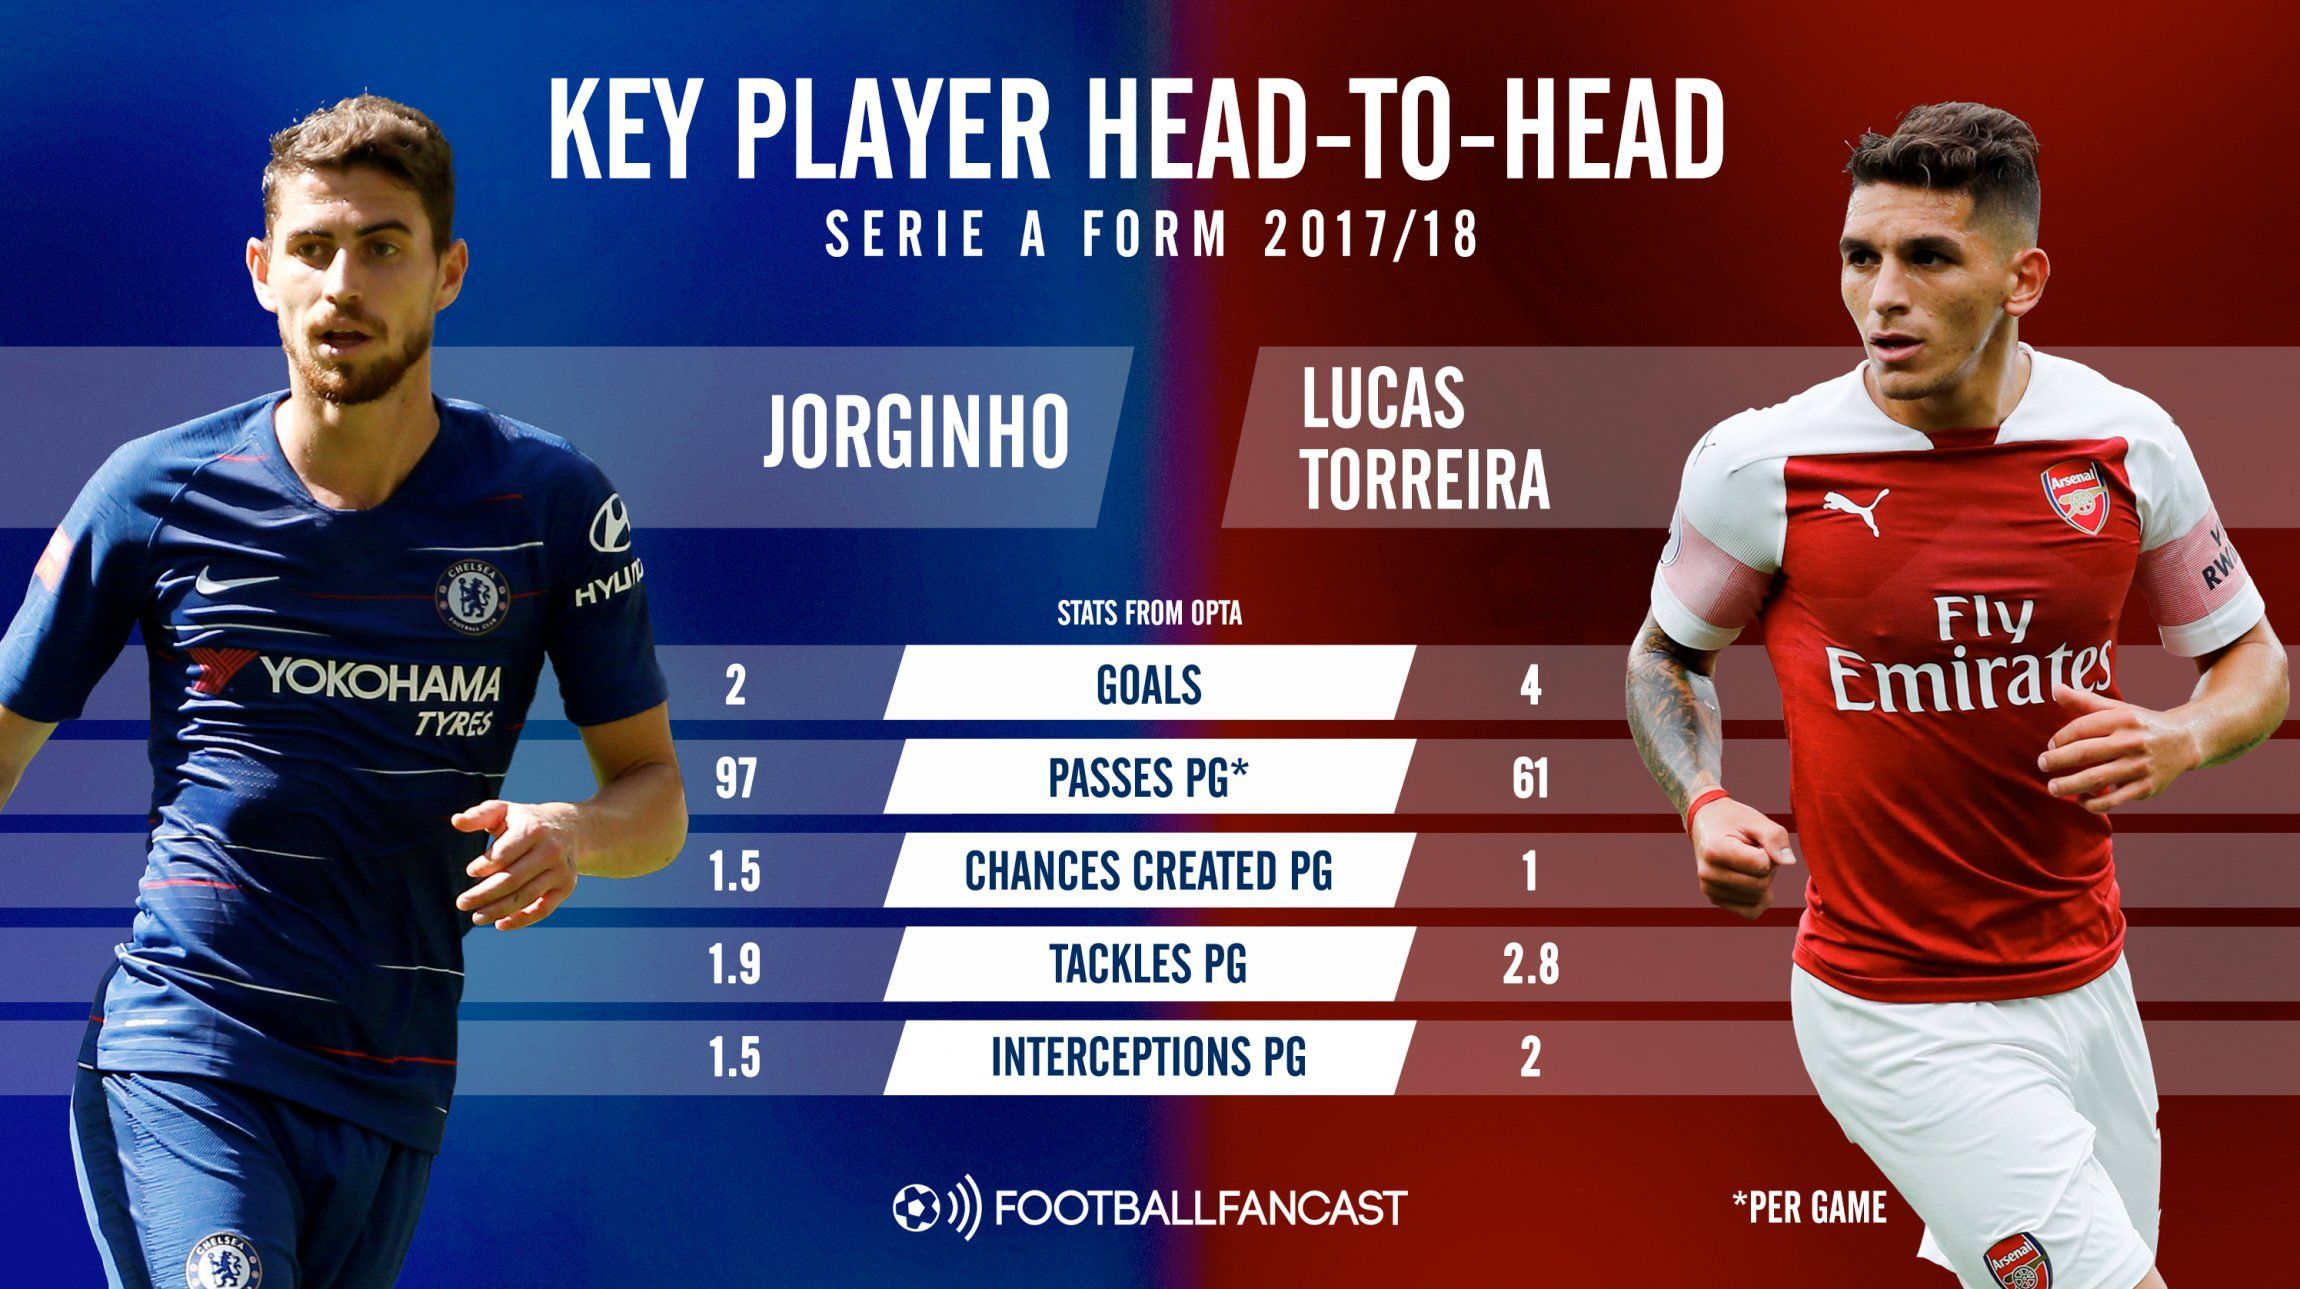 Jorginho vs Lucas Torreira - Head to Head